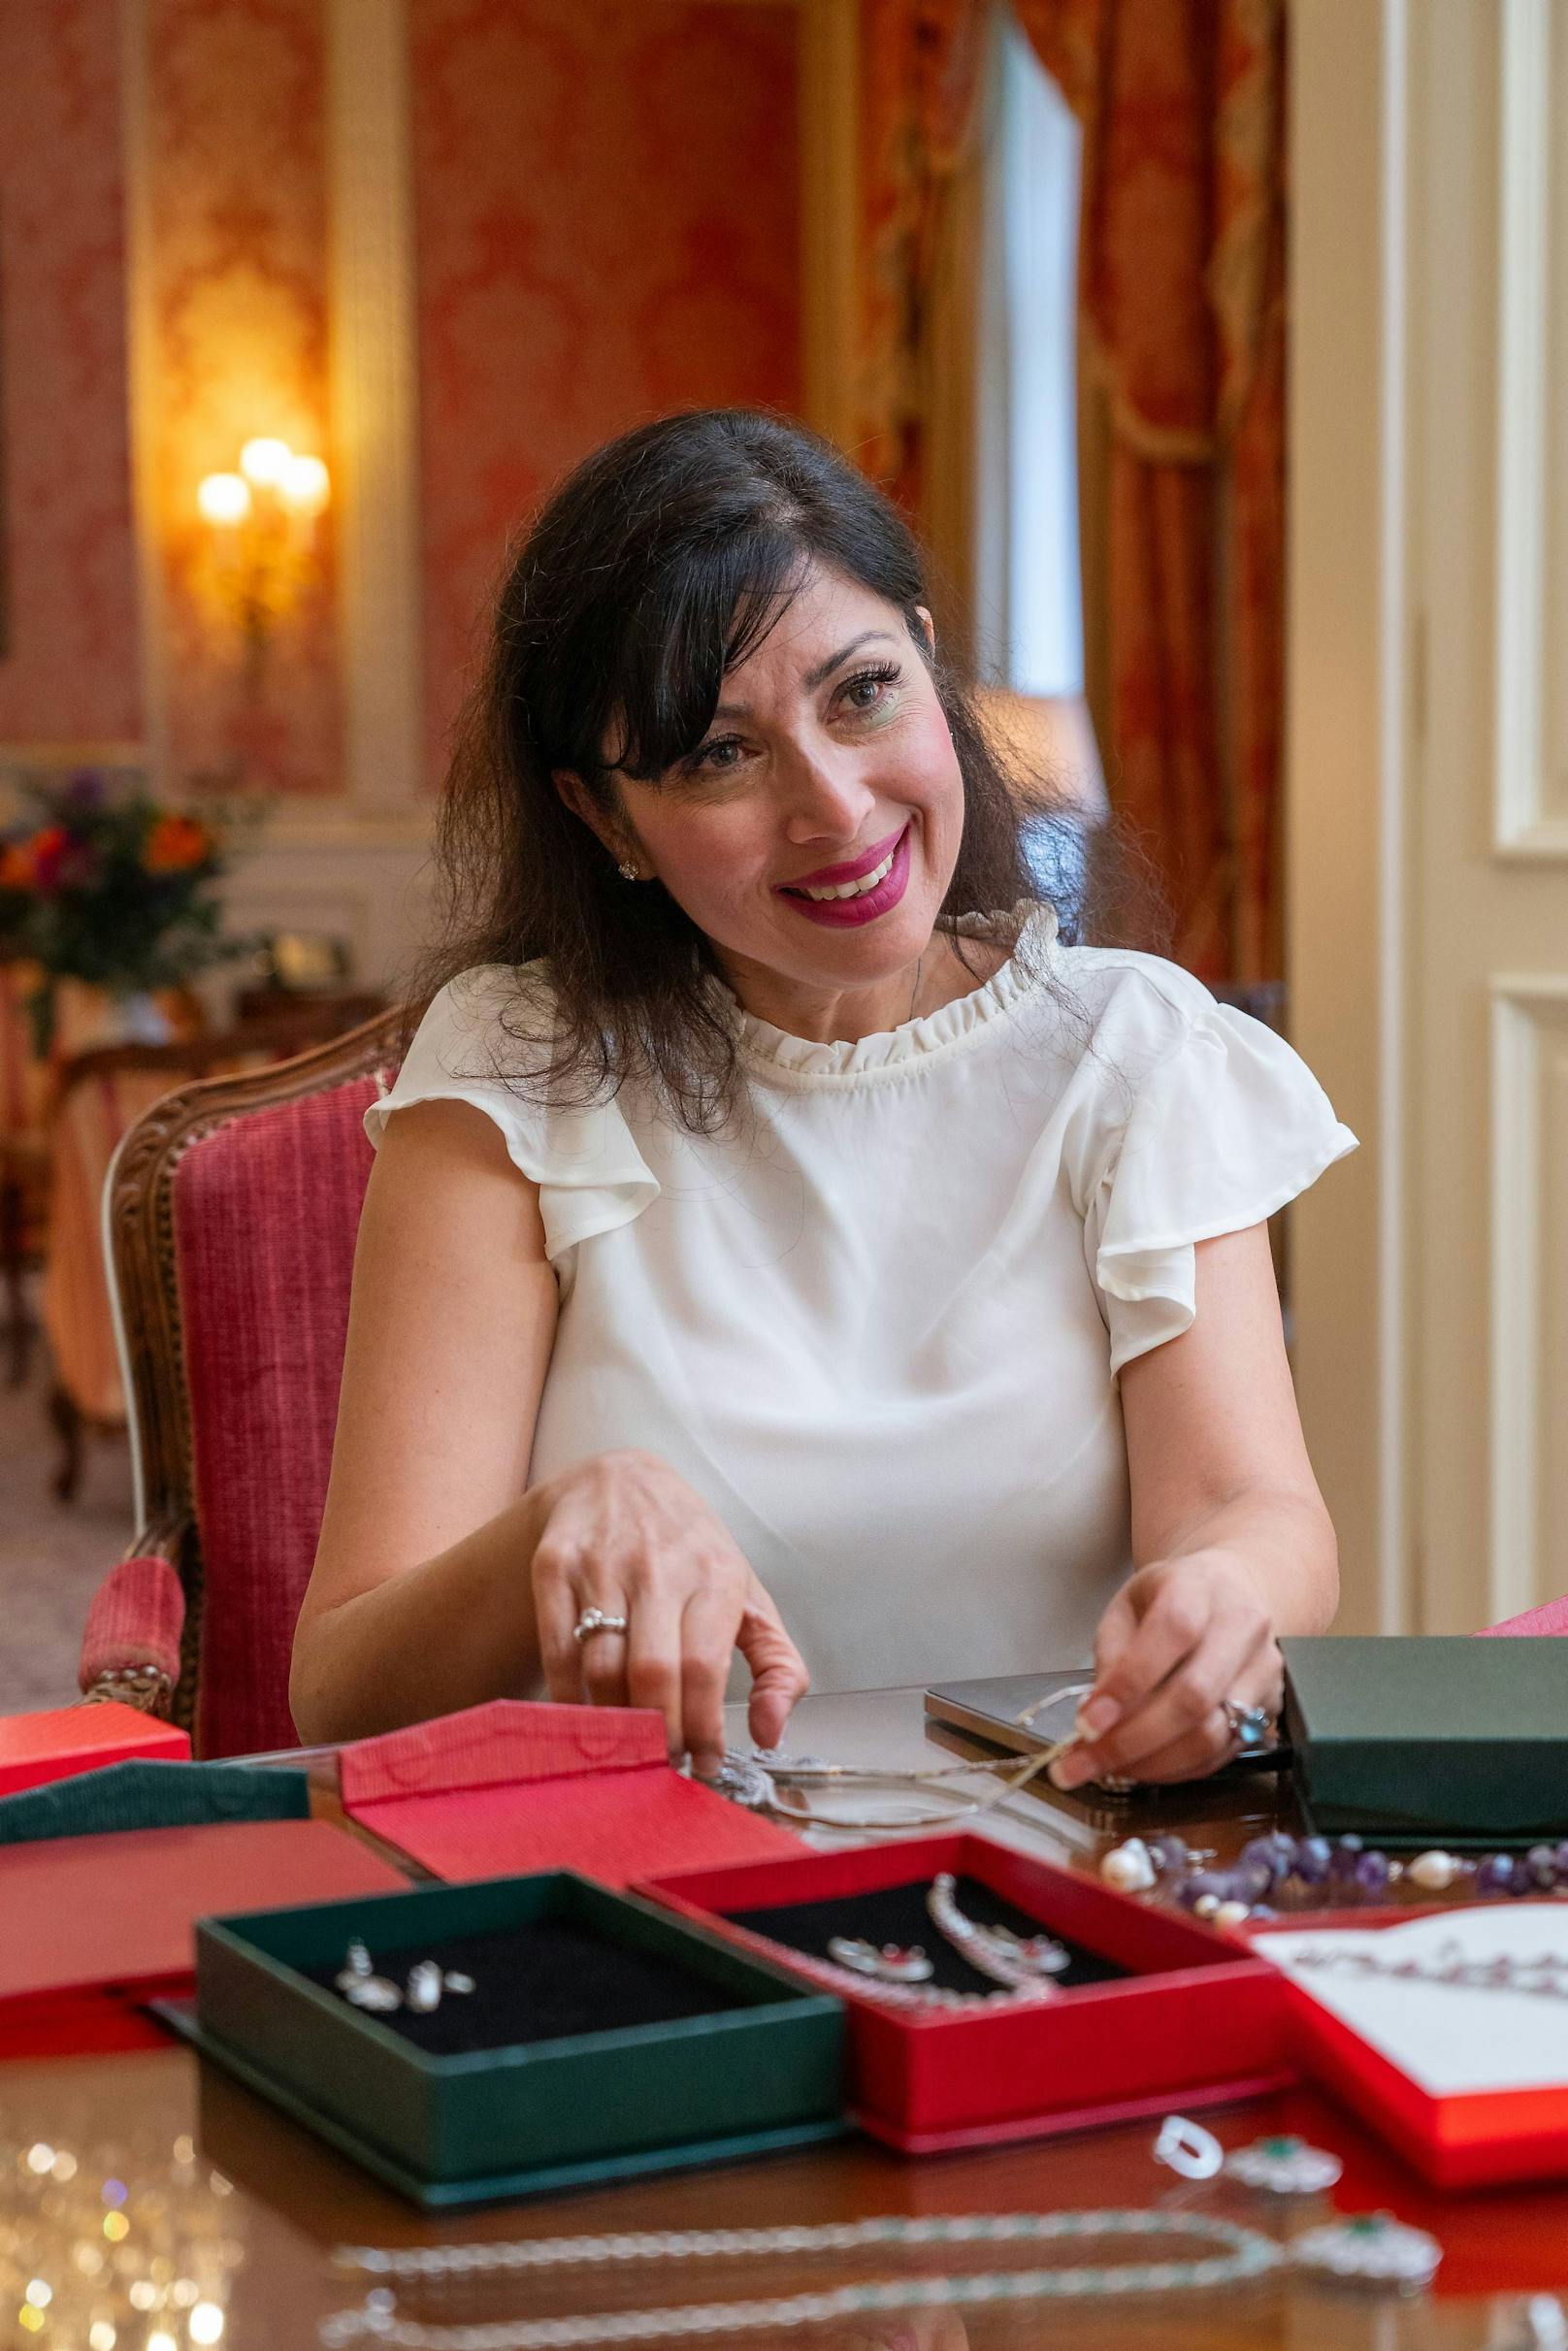 Schmuckdesignerin Shifteh Maryan wurde in das Luxus-Hotel bestellt. Simone Reiländer sucht sich bei ihr den Brautschmuck aus.